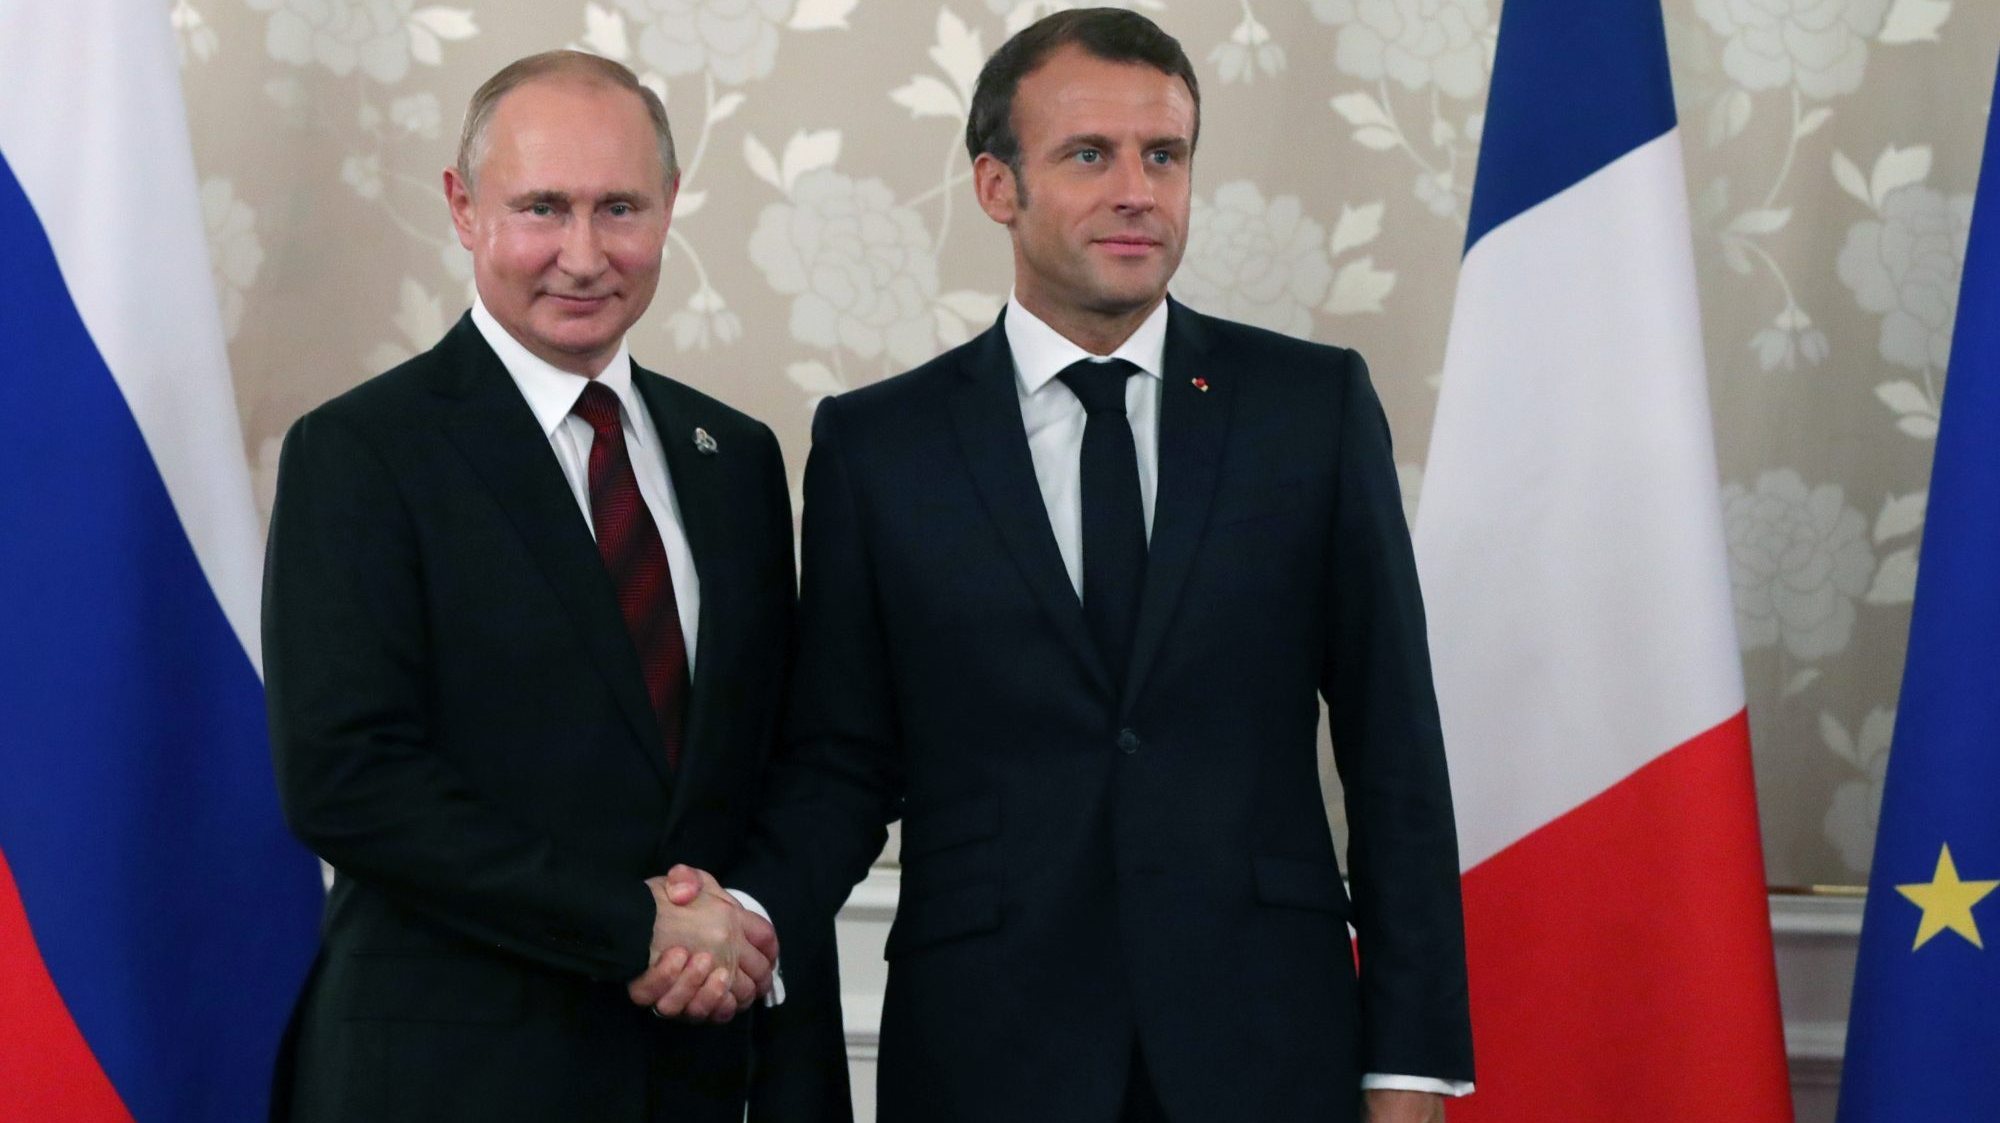 A conversa entre os chefes de Estado francês e russo foi divulgada no dia 30 de junho pelo canal France 2, convidado por Macron para registar uma reunião com o líder russo